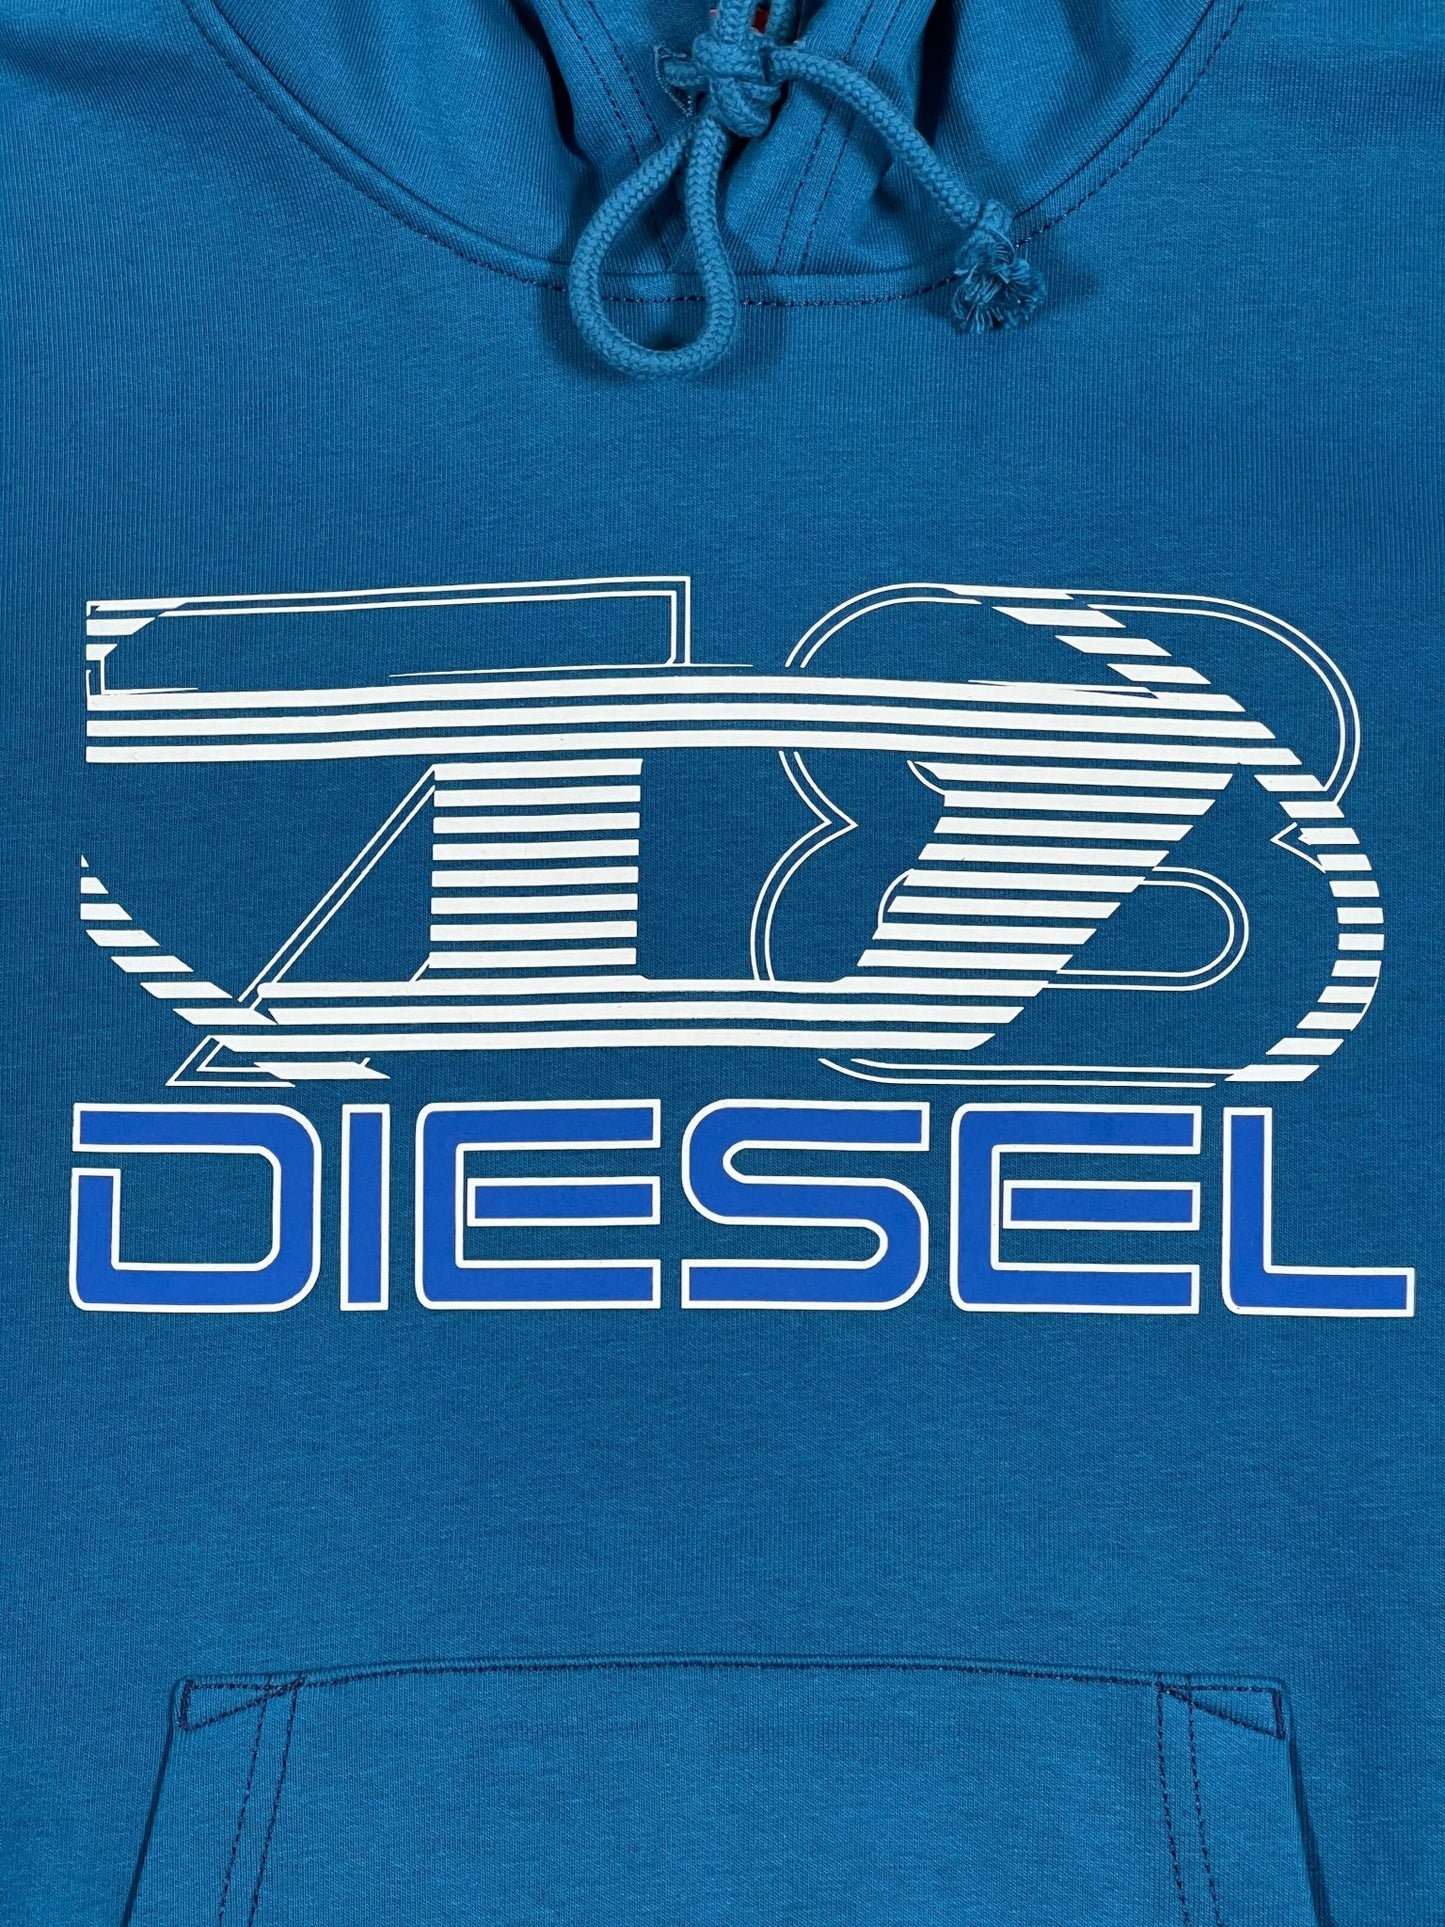 A blue cotton hoodie with the word DIESEL on it.

Product Name: DIESEL S-GINN-HOOD-K40 TEAL
Brand Name: DIESEL